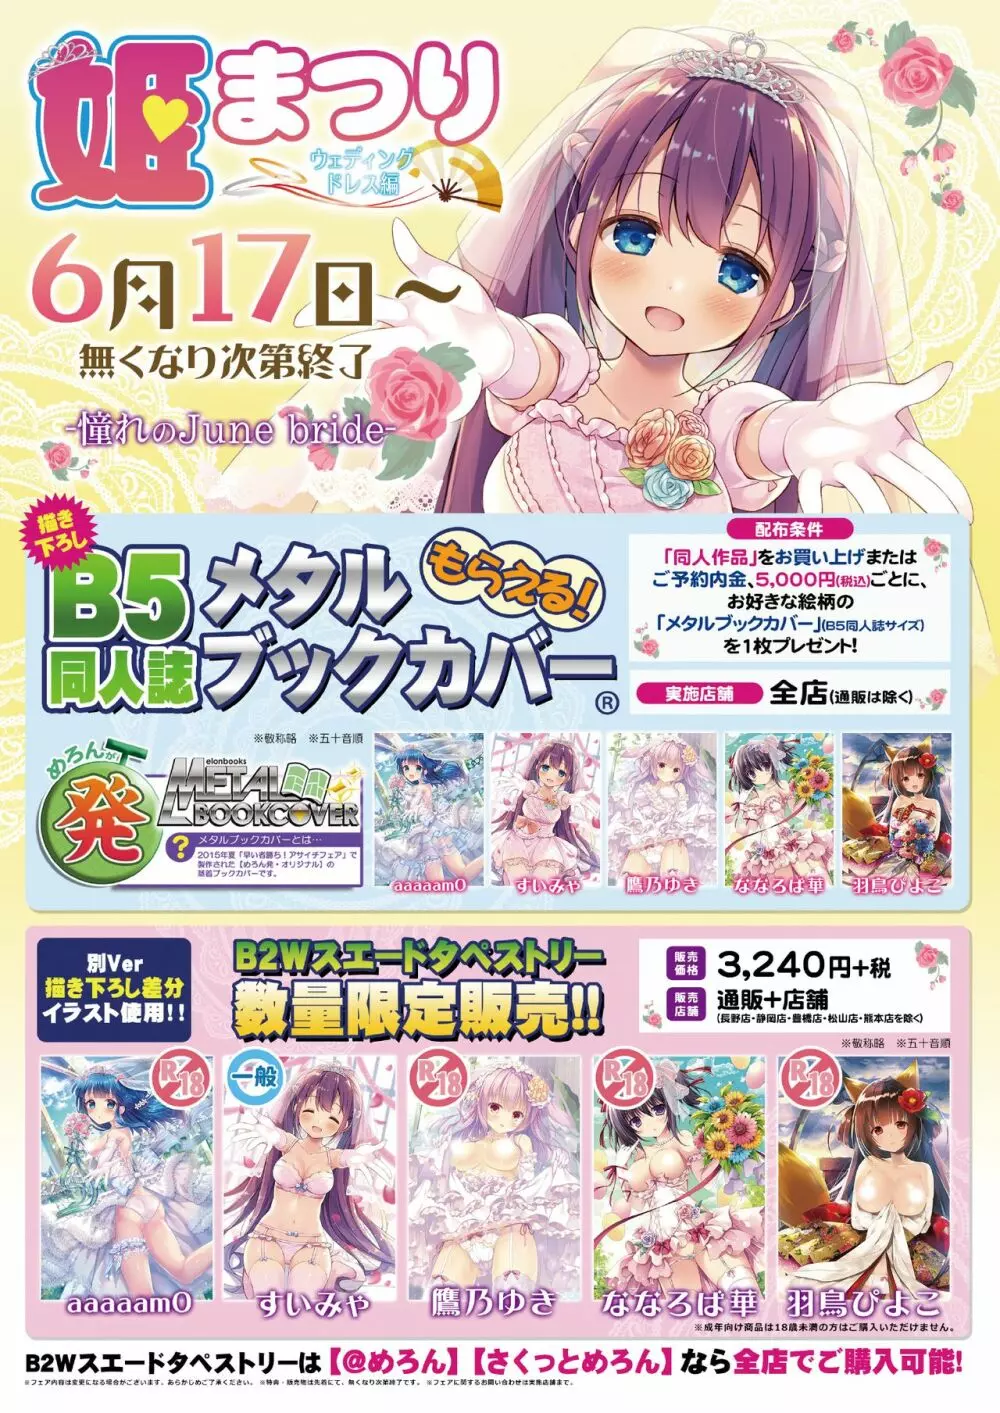 月刊うりぼうざっか店 2018年5月25日発行号 2ページ